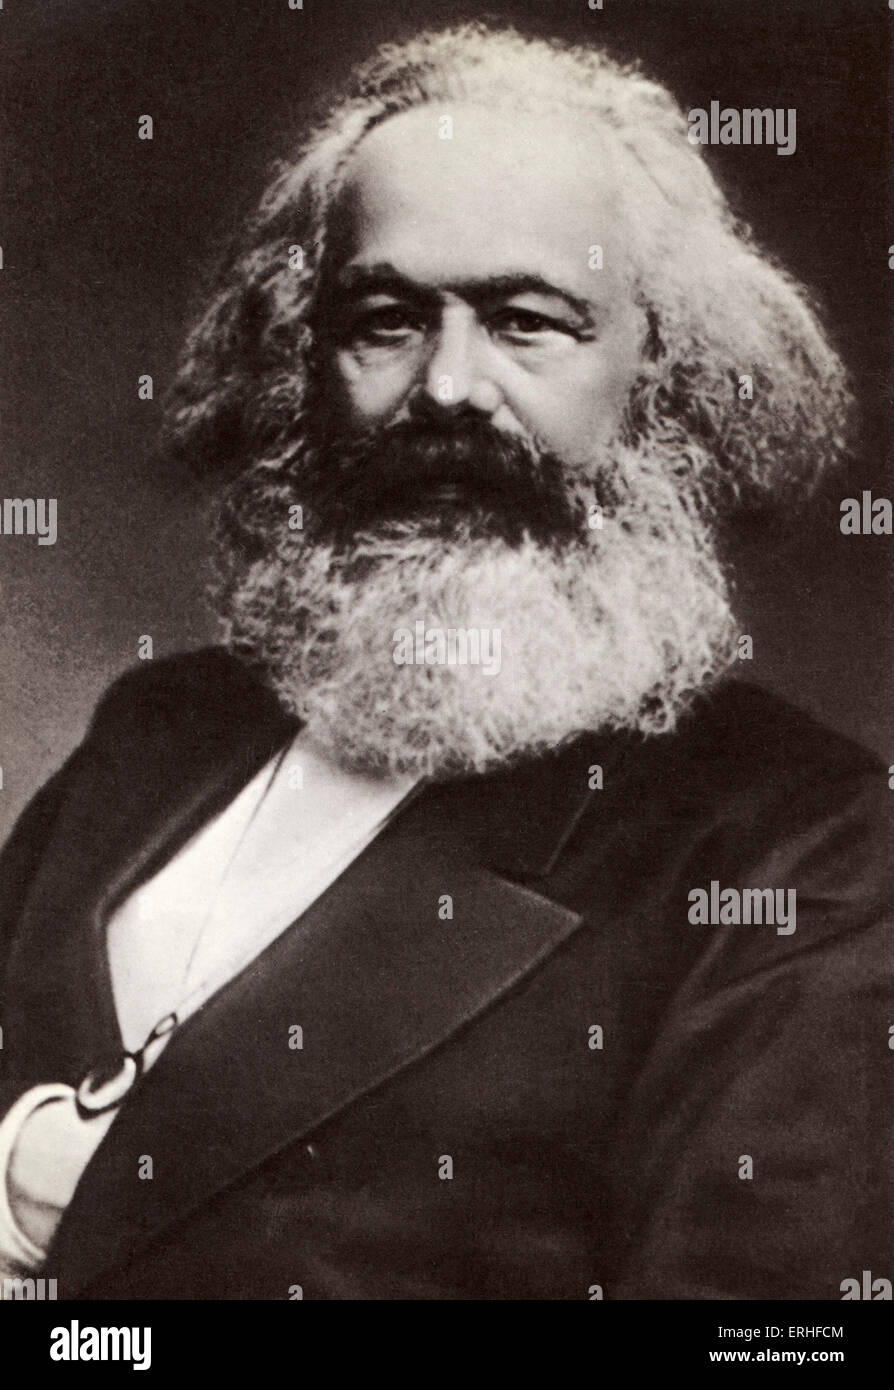 Karl Marx, portrait. L'historien allemand, économiste et révolutionnaire, 1818-1883 Banque D'Images